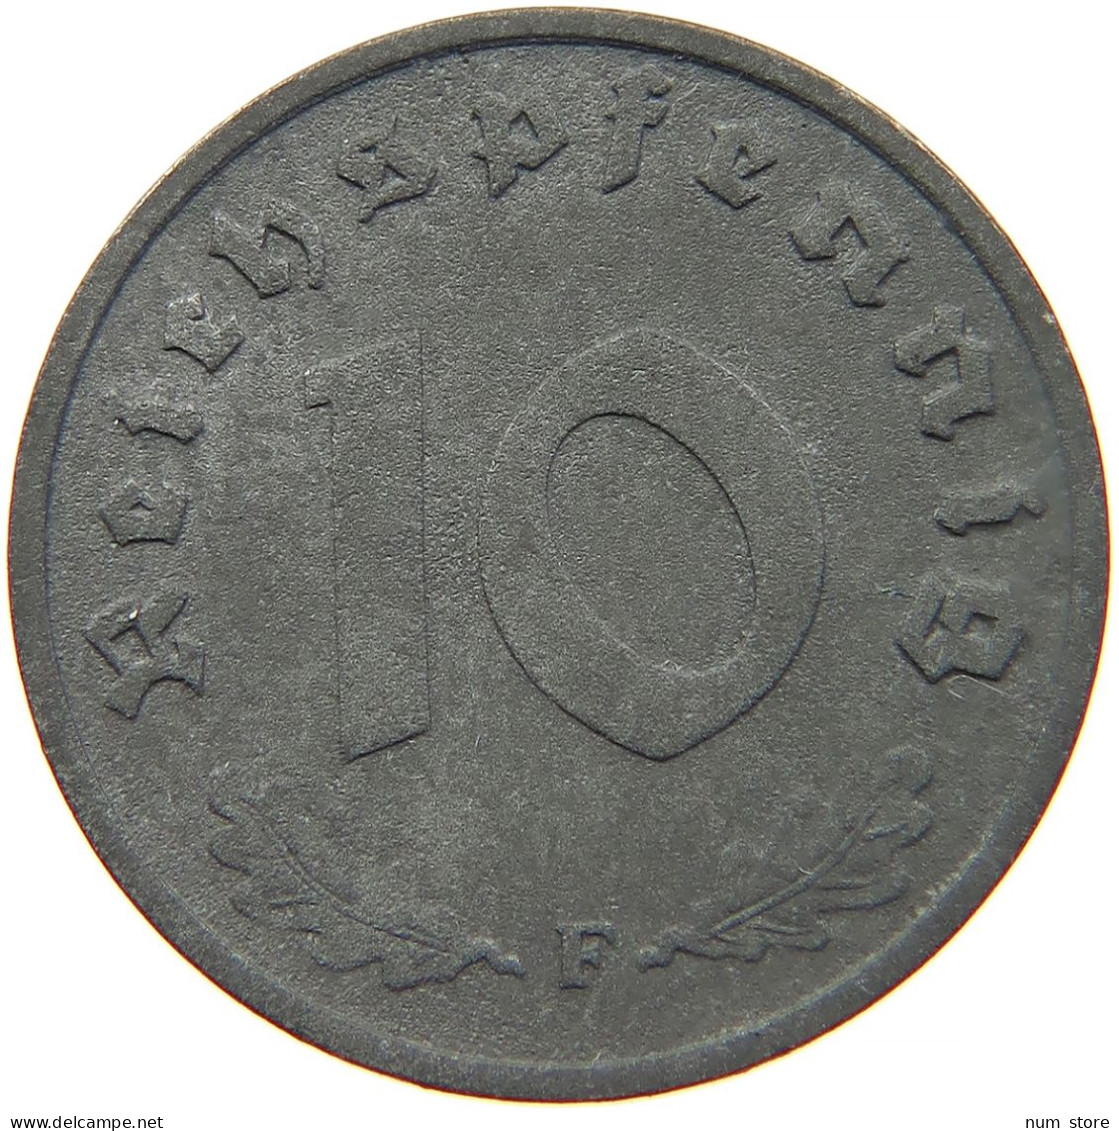 GERMANY 10 REICHSPFENNIG 1942 F #s095 0019 - 10 Reichspfennig